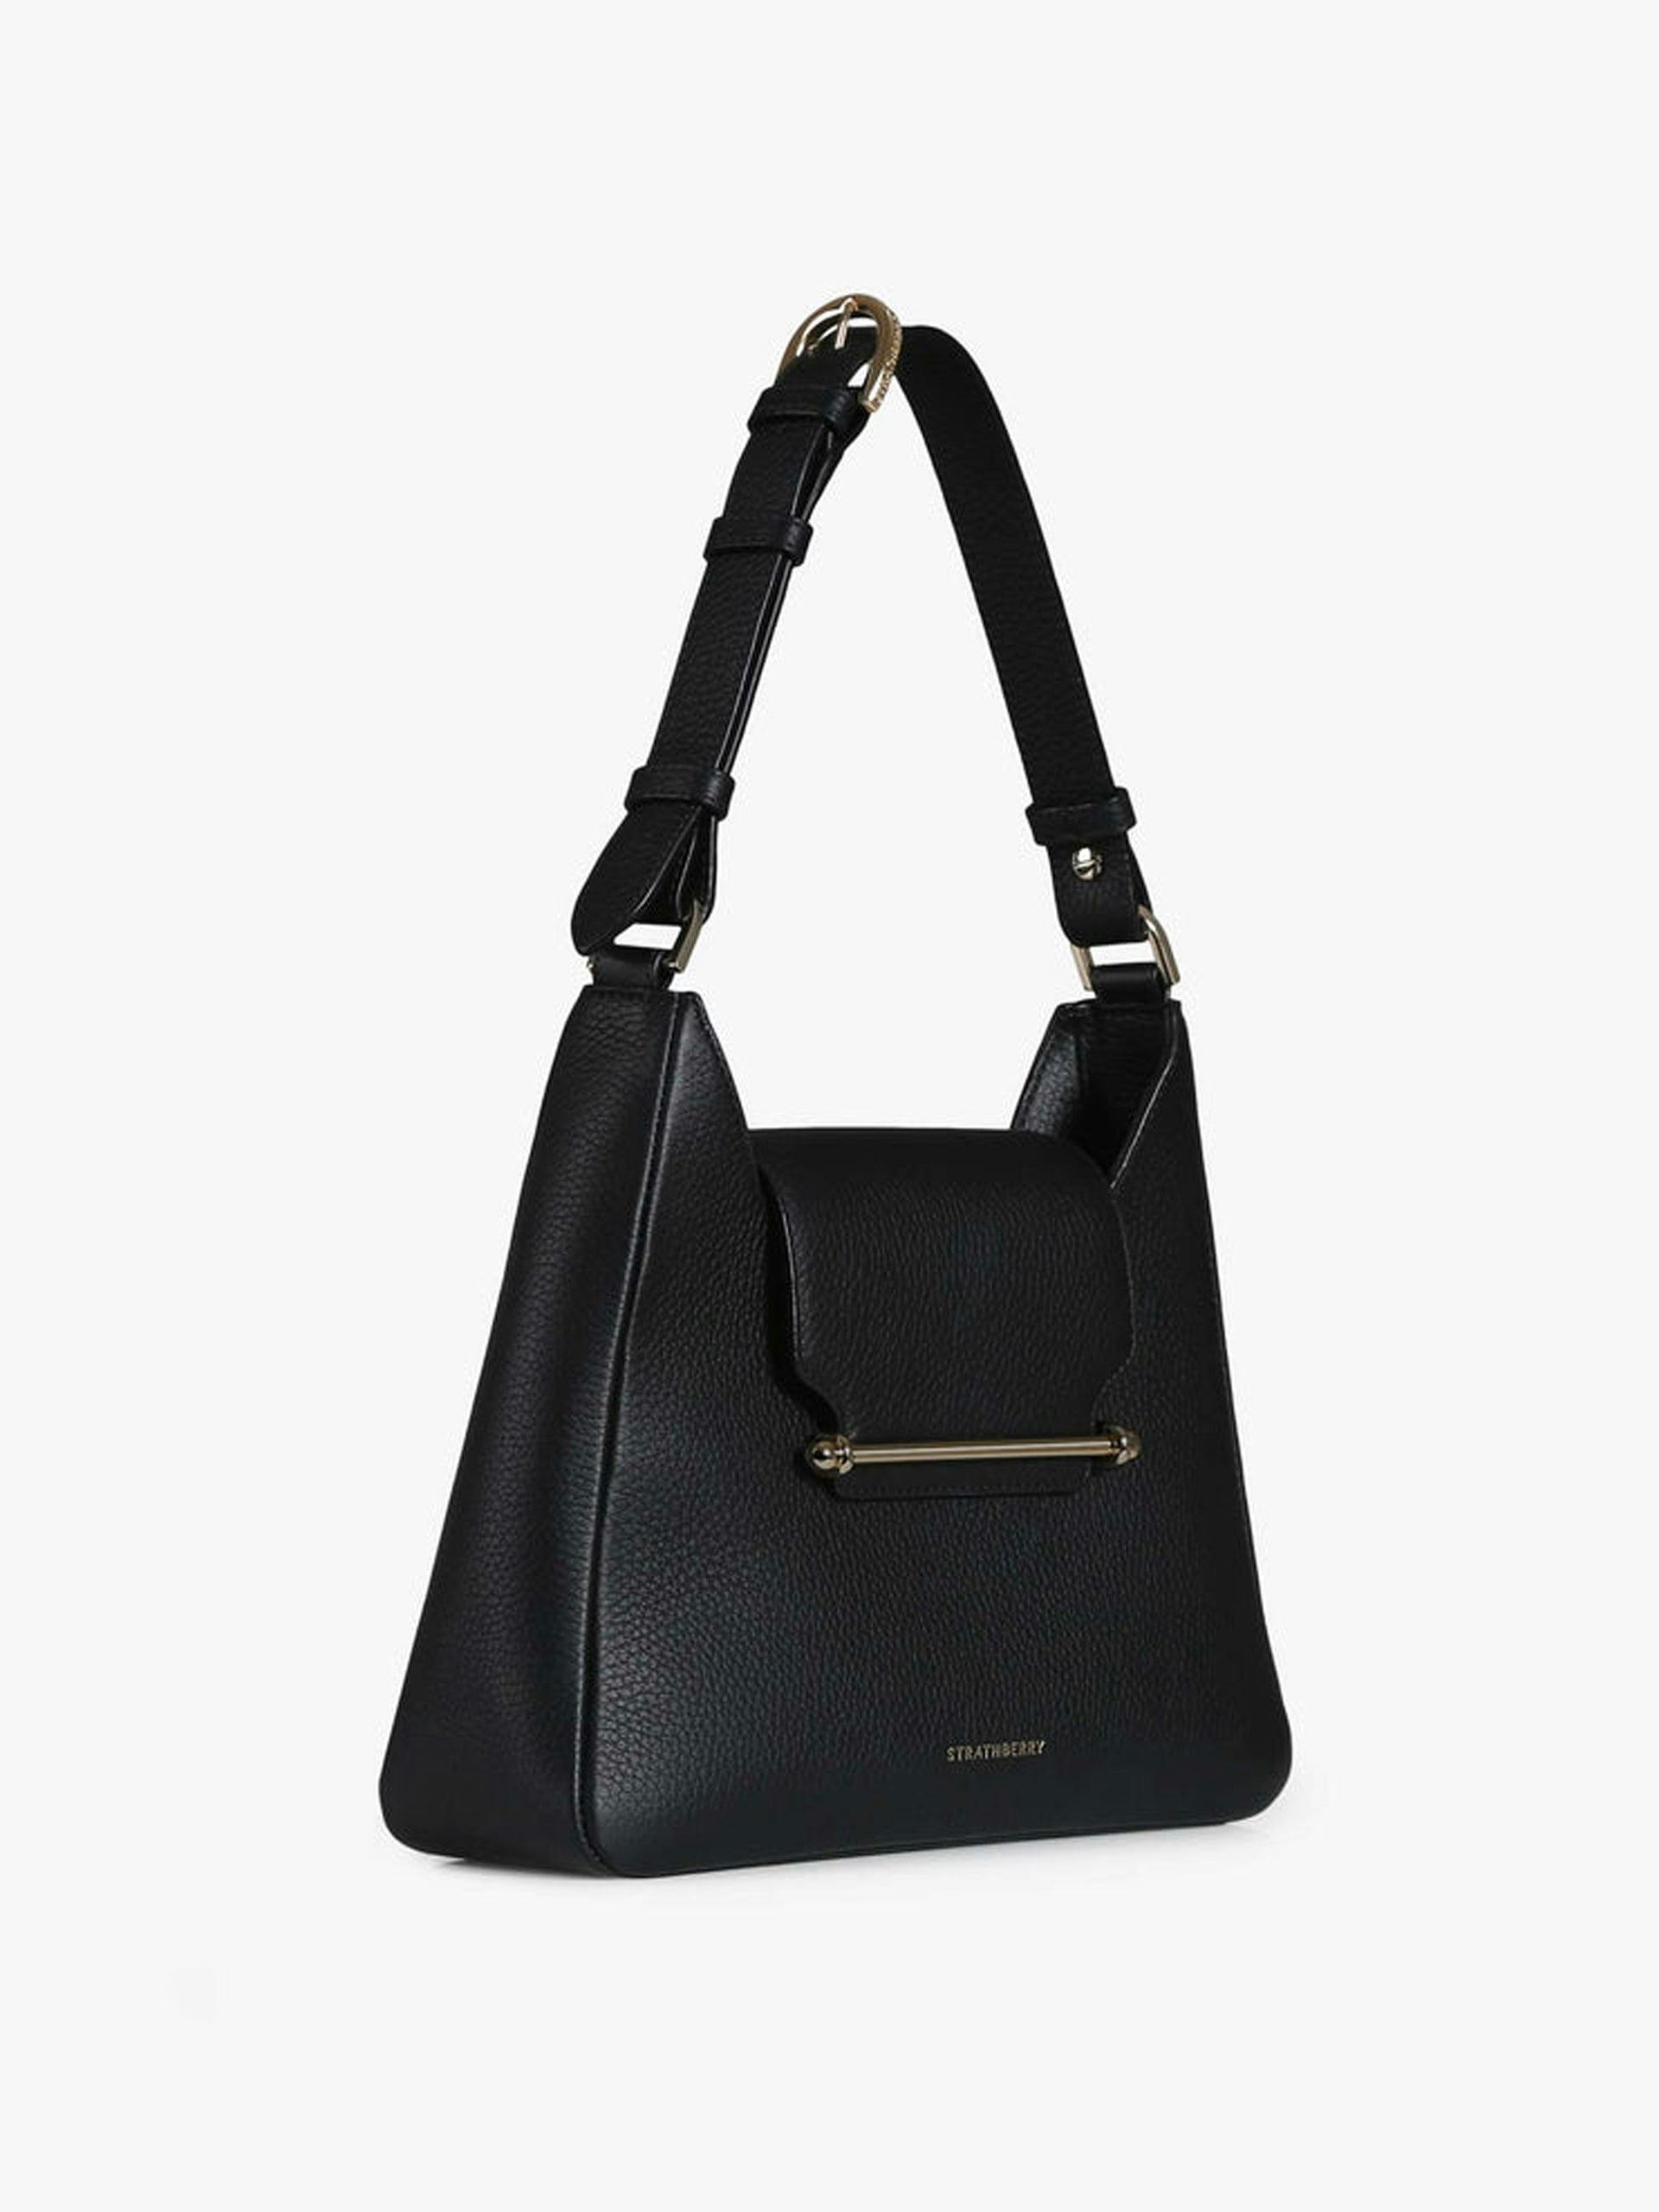 Multrees Hobo handbag in black